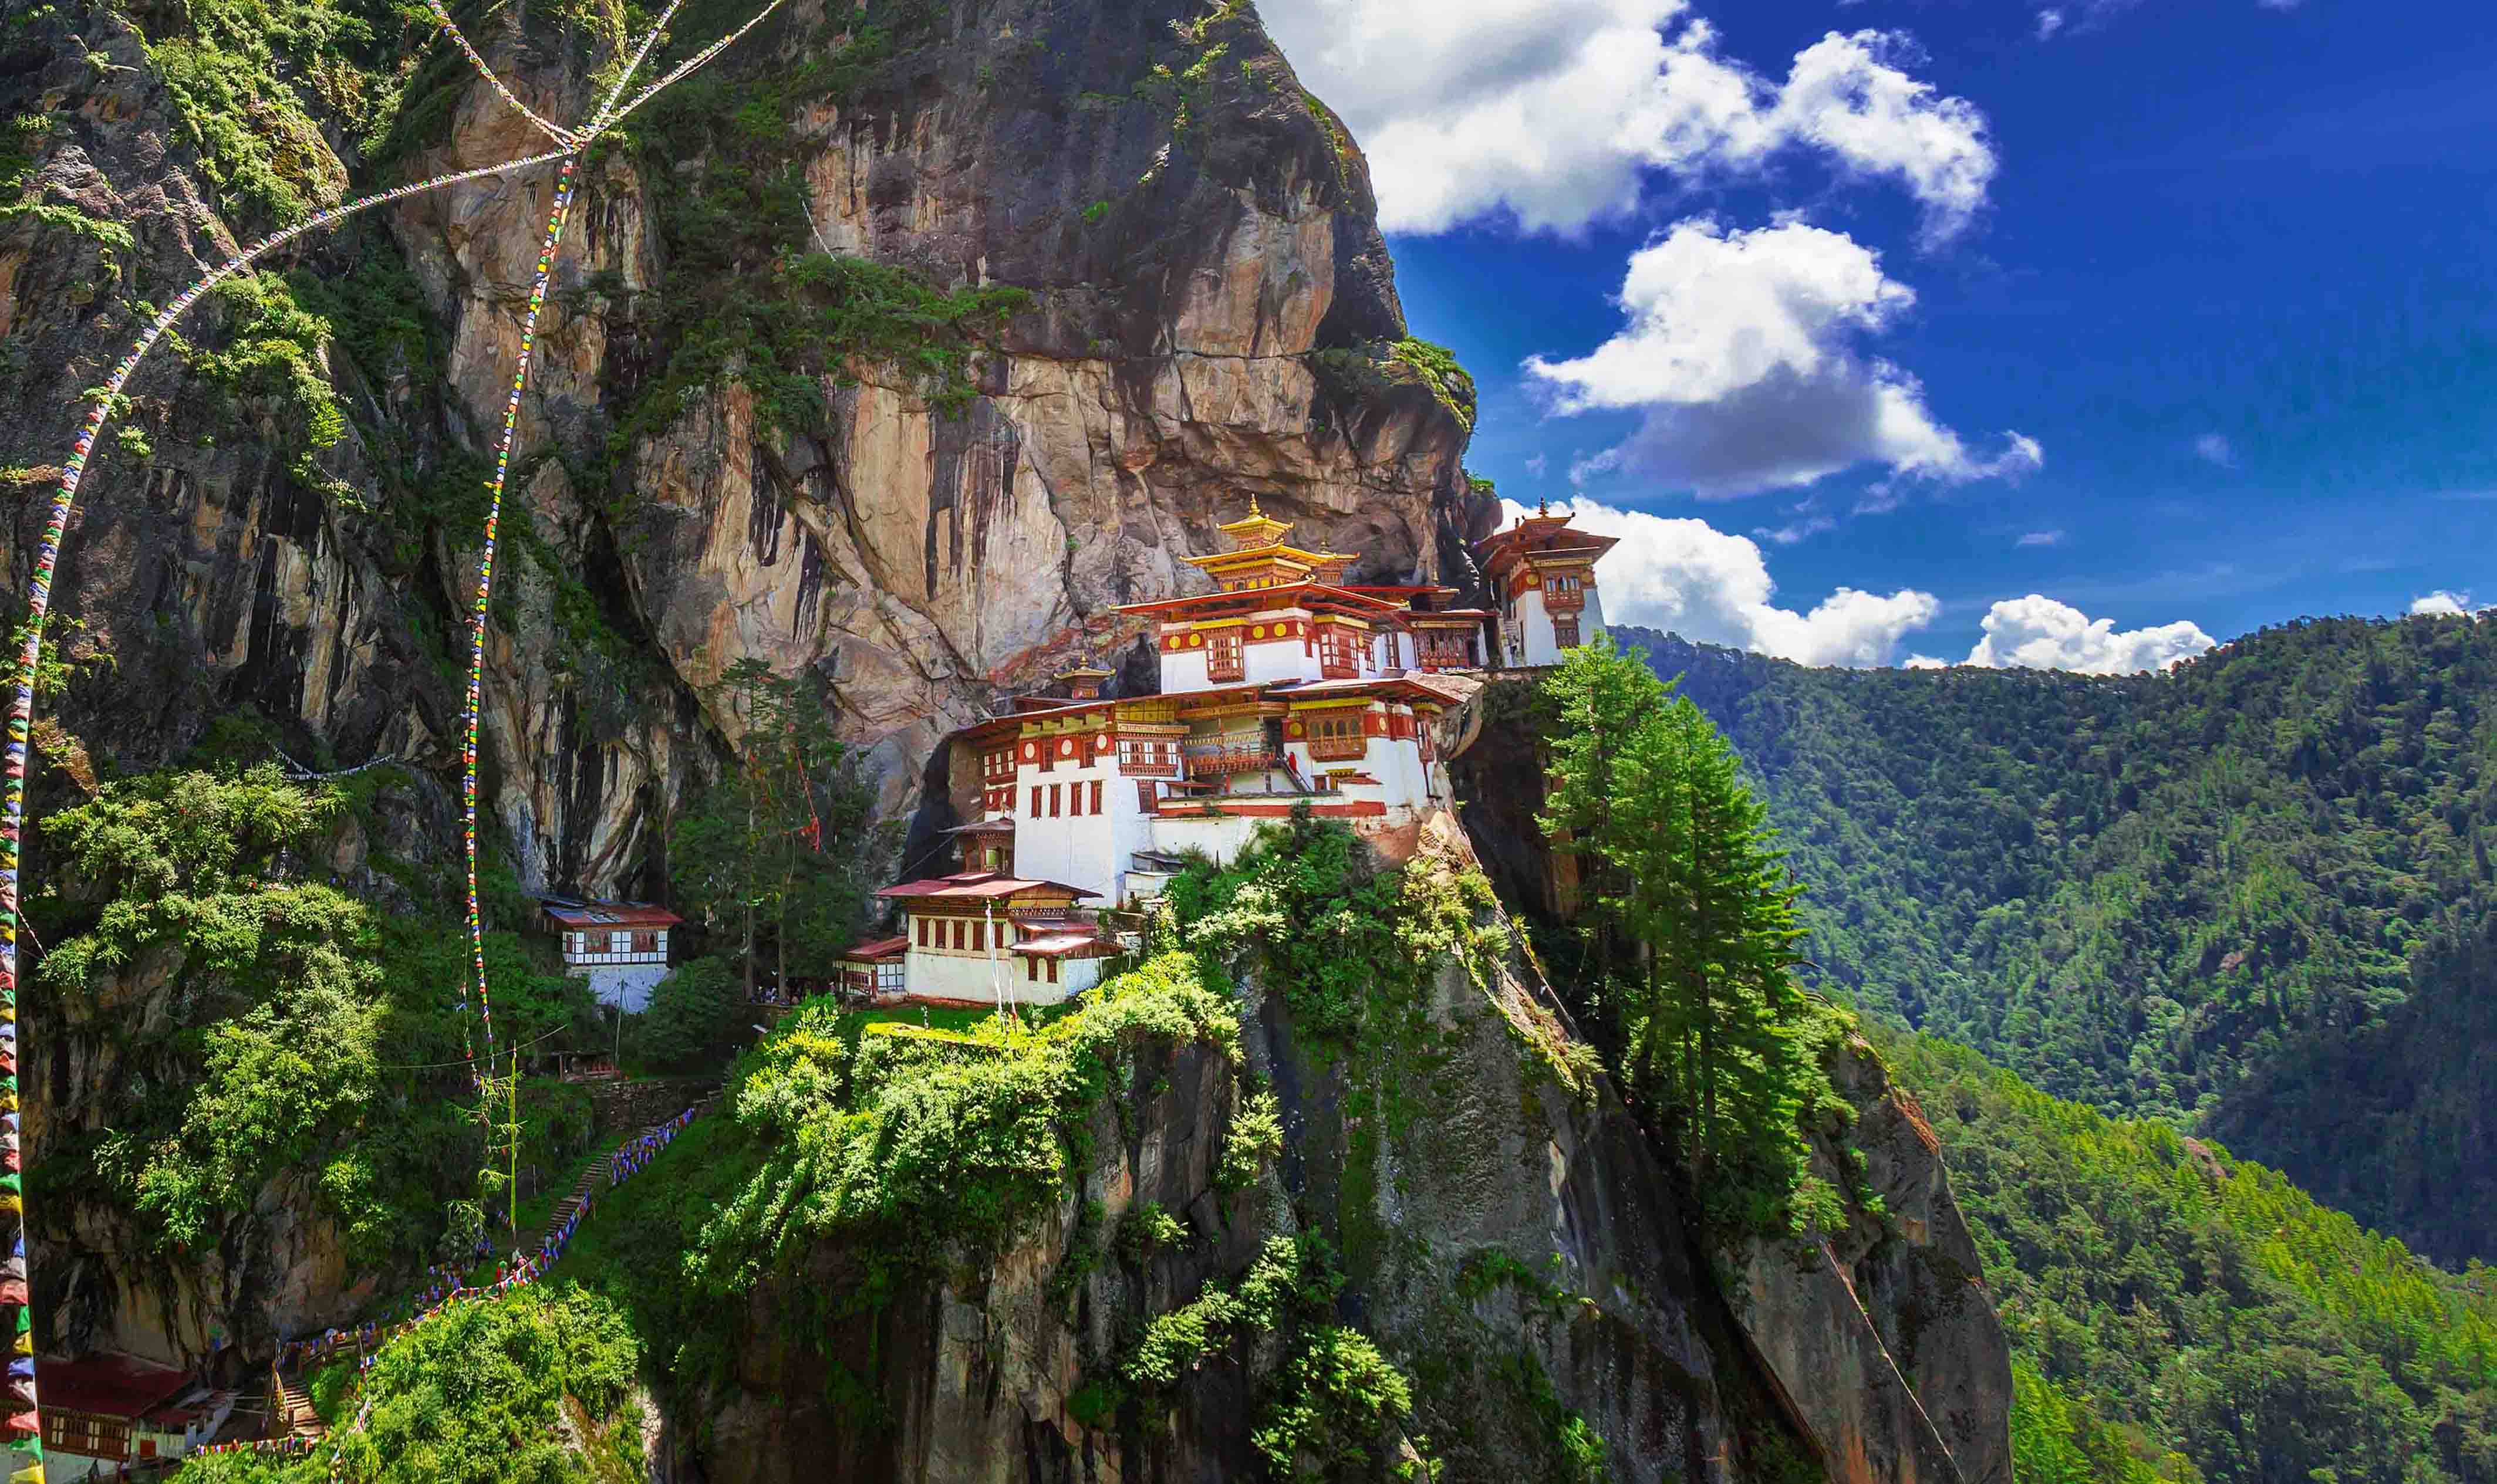 Taktsang Monastery – The Tiger’s Nest